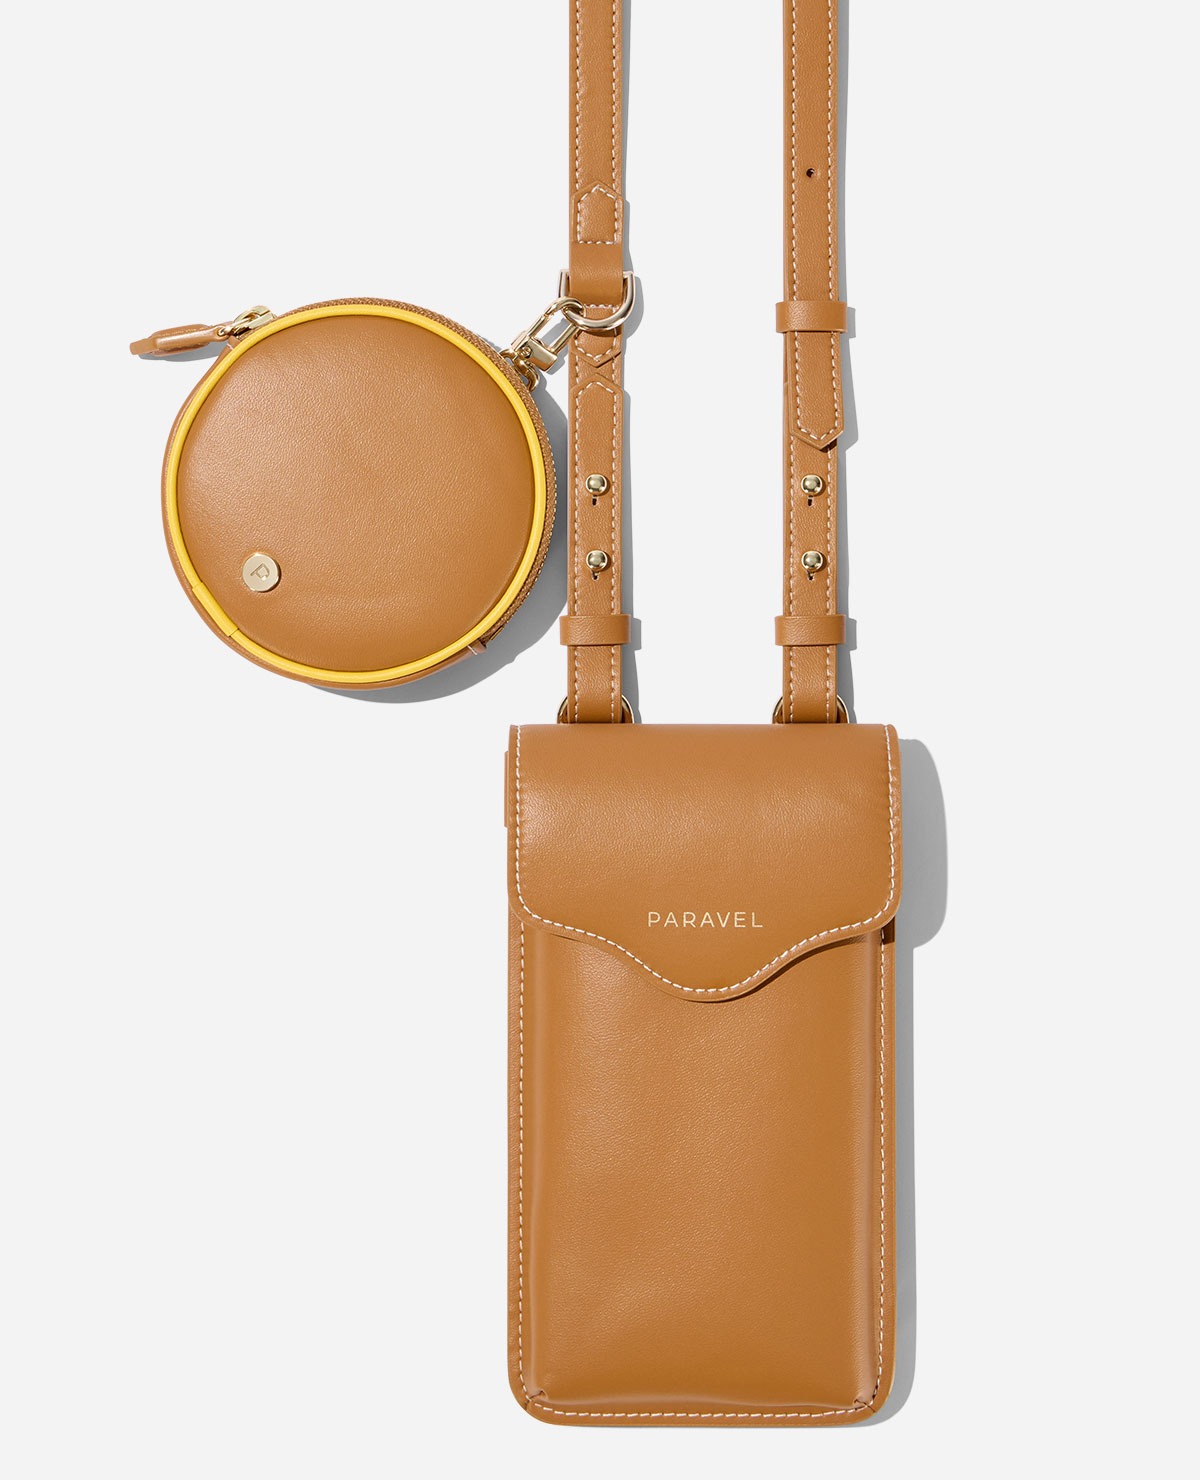 MEN CANVAS WAIST Bag Phone Purse Zipper Belt Bum Pouch (Style 2 Black)  $12.86 - PicClick AU